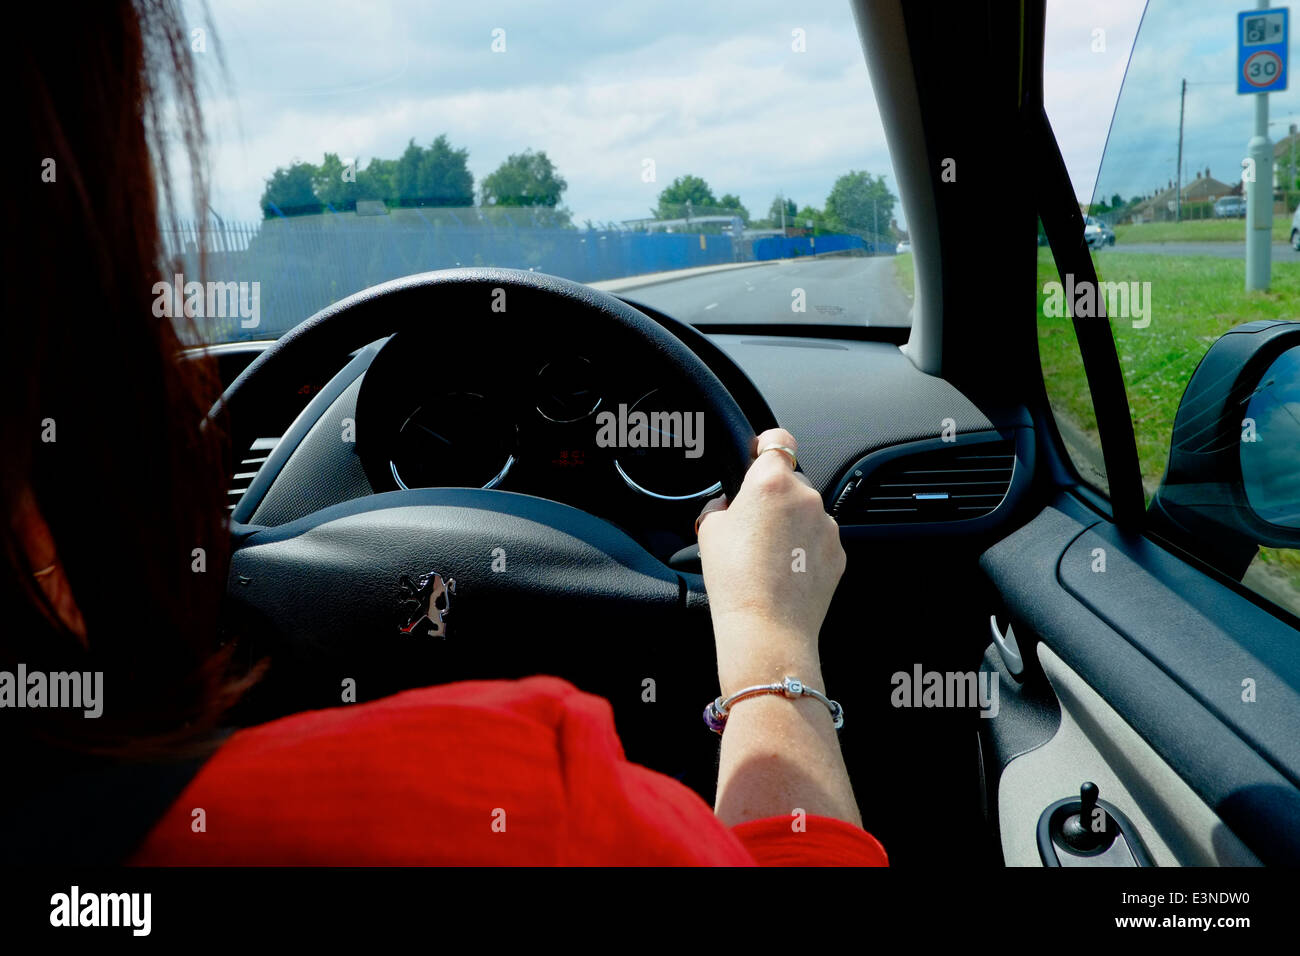 Eine Frau zeigt ihre Rechte Hand auf das Lenkrad England UK Autofahren Stockfoto